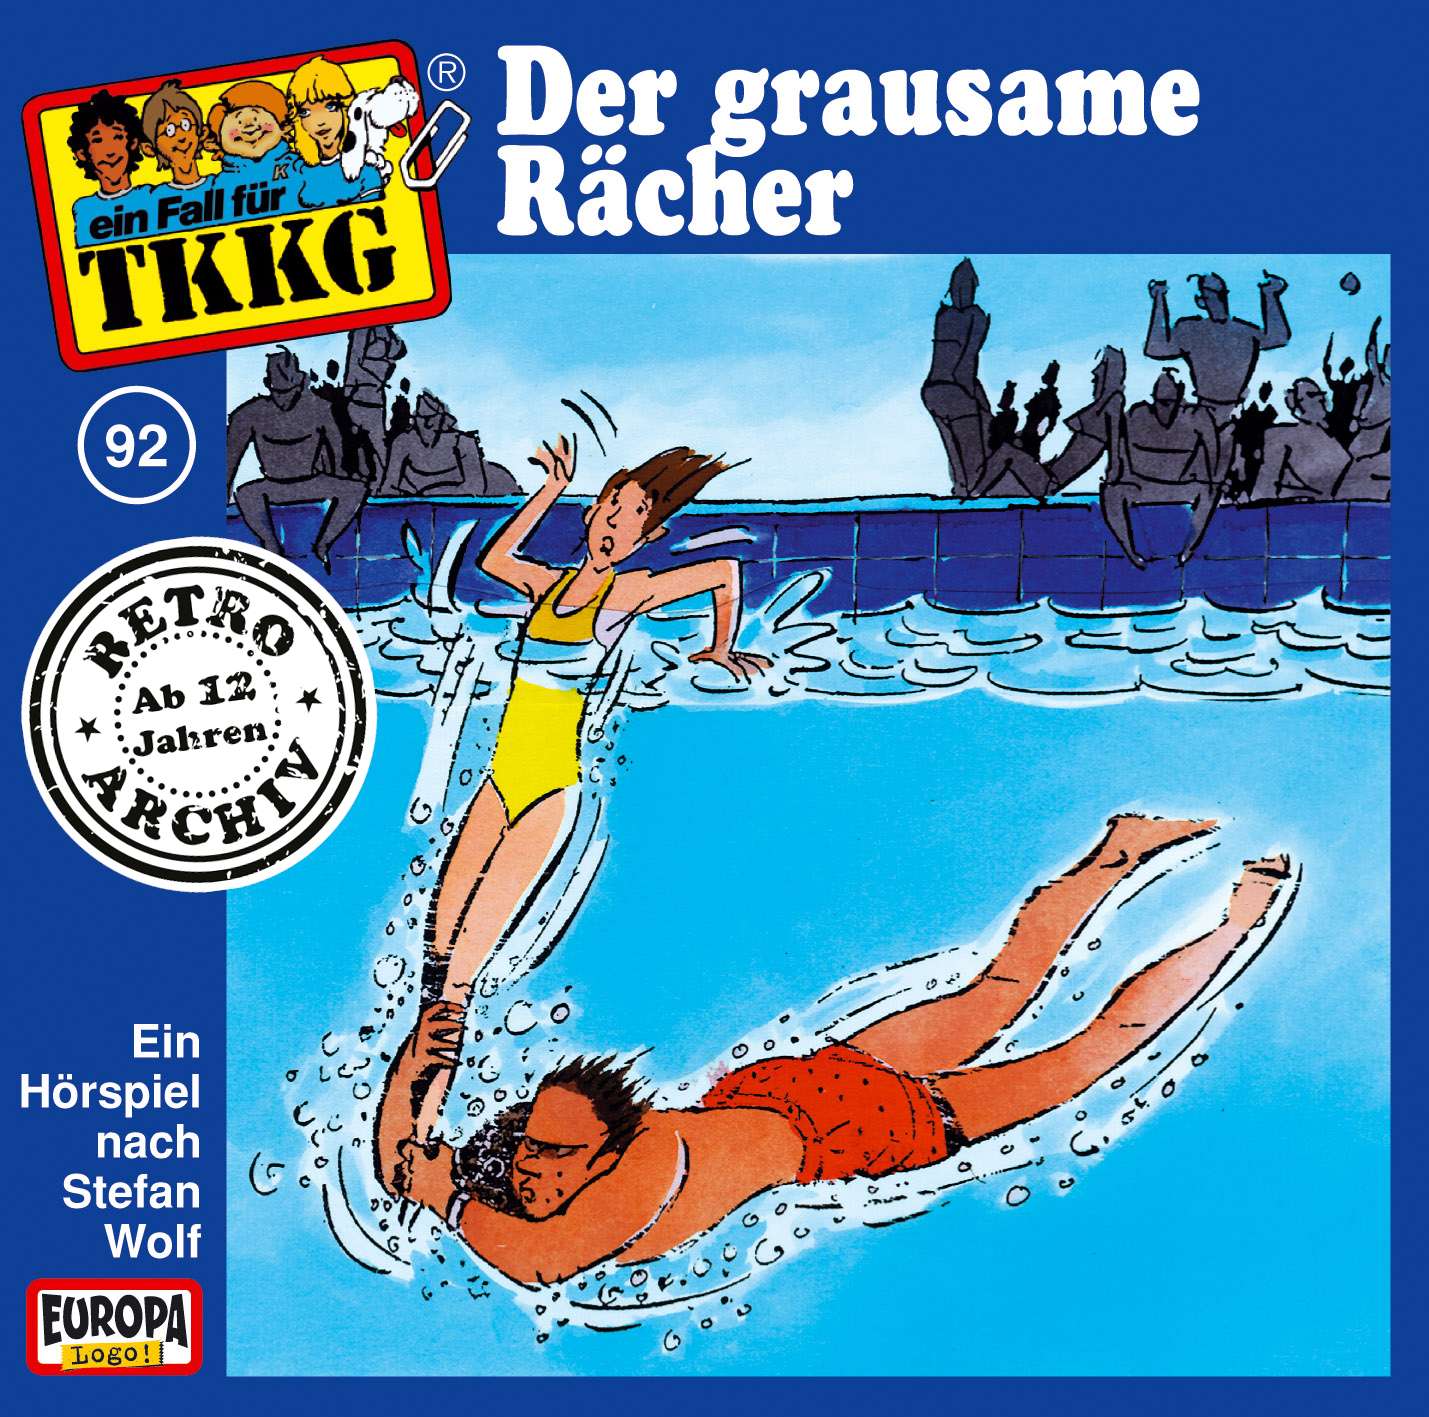 TKKG Retro-Archiv: Der grausame Rächer